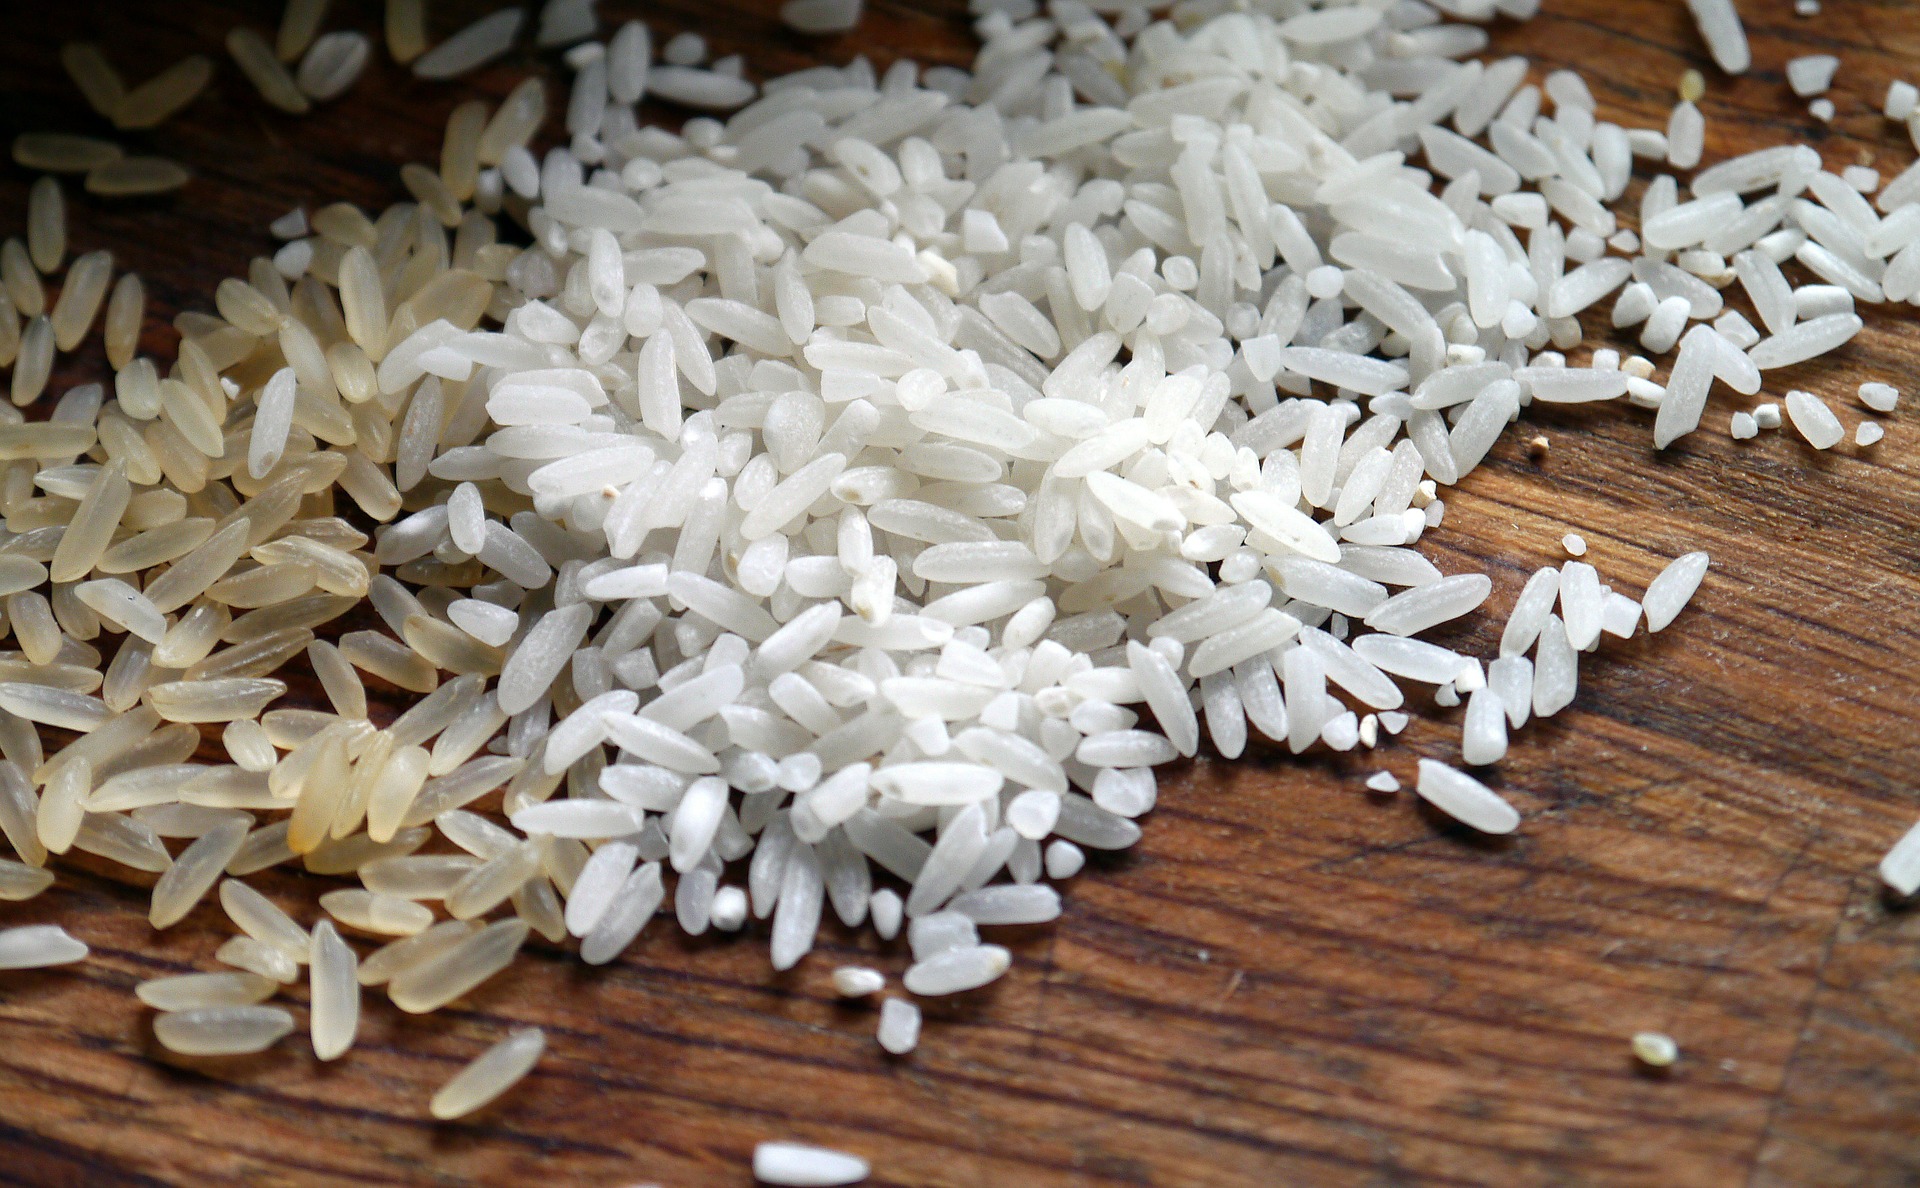 Ziarno ryżu to gigant przy najmniejszym komputerze świata